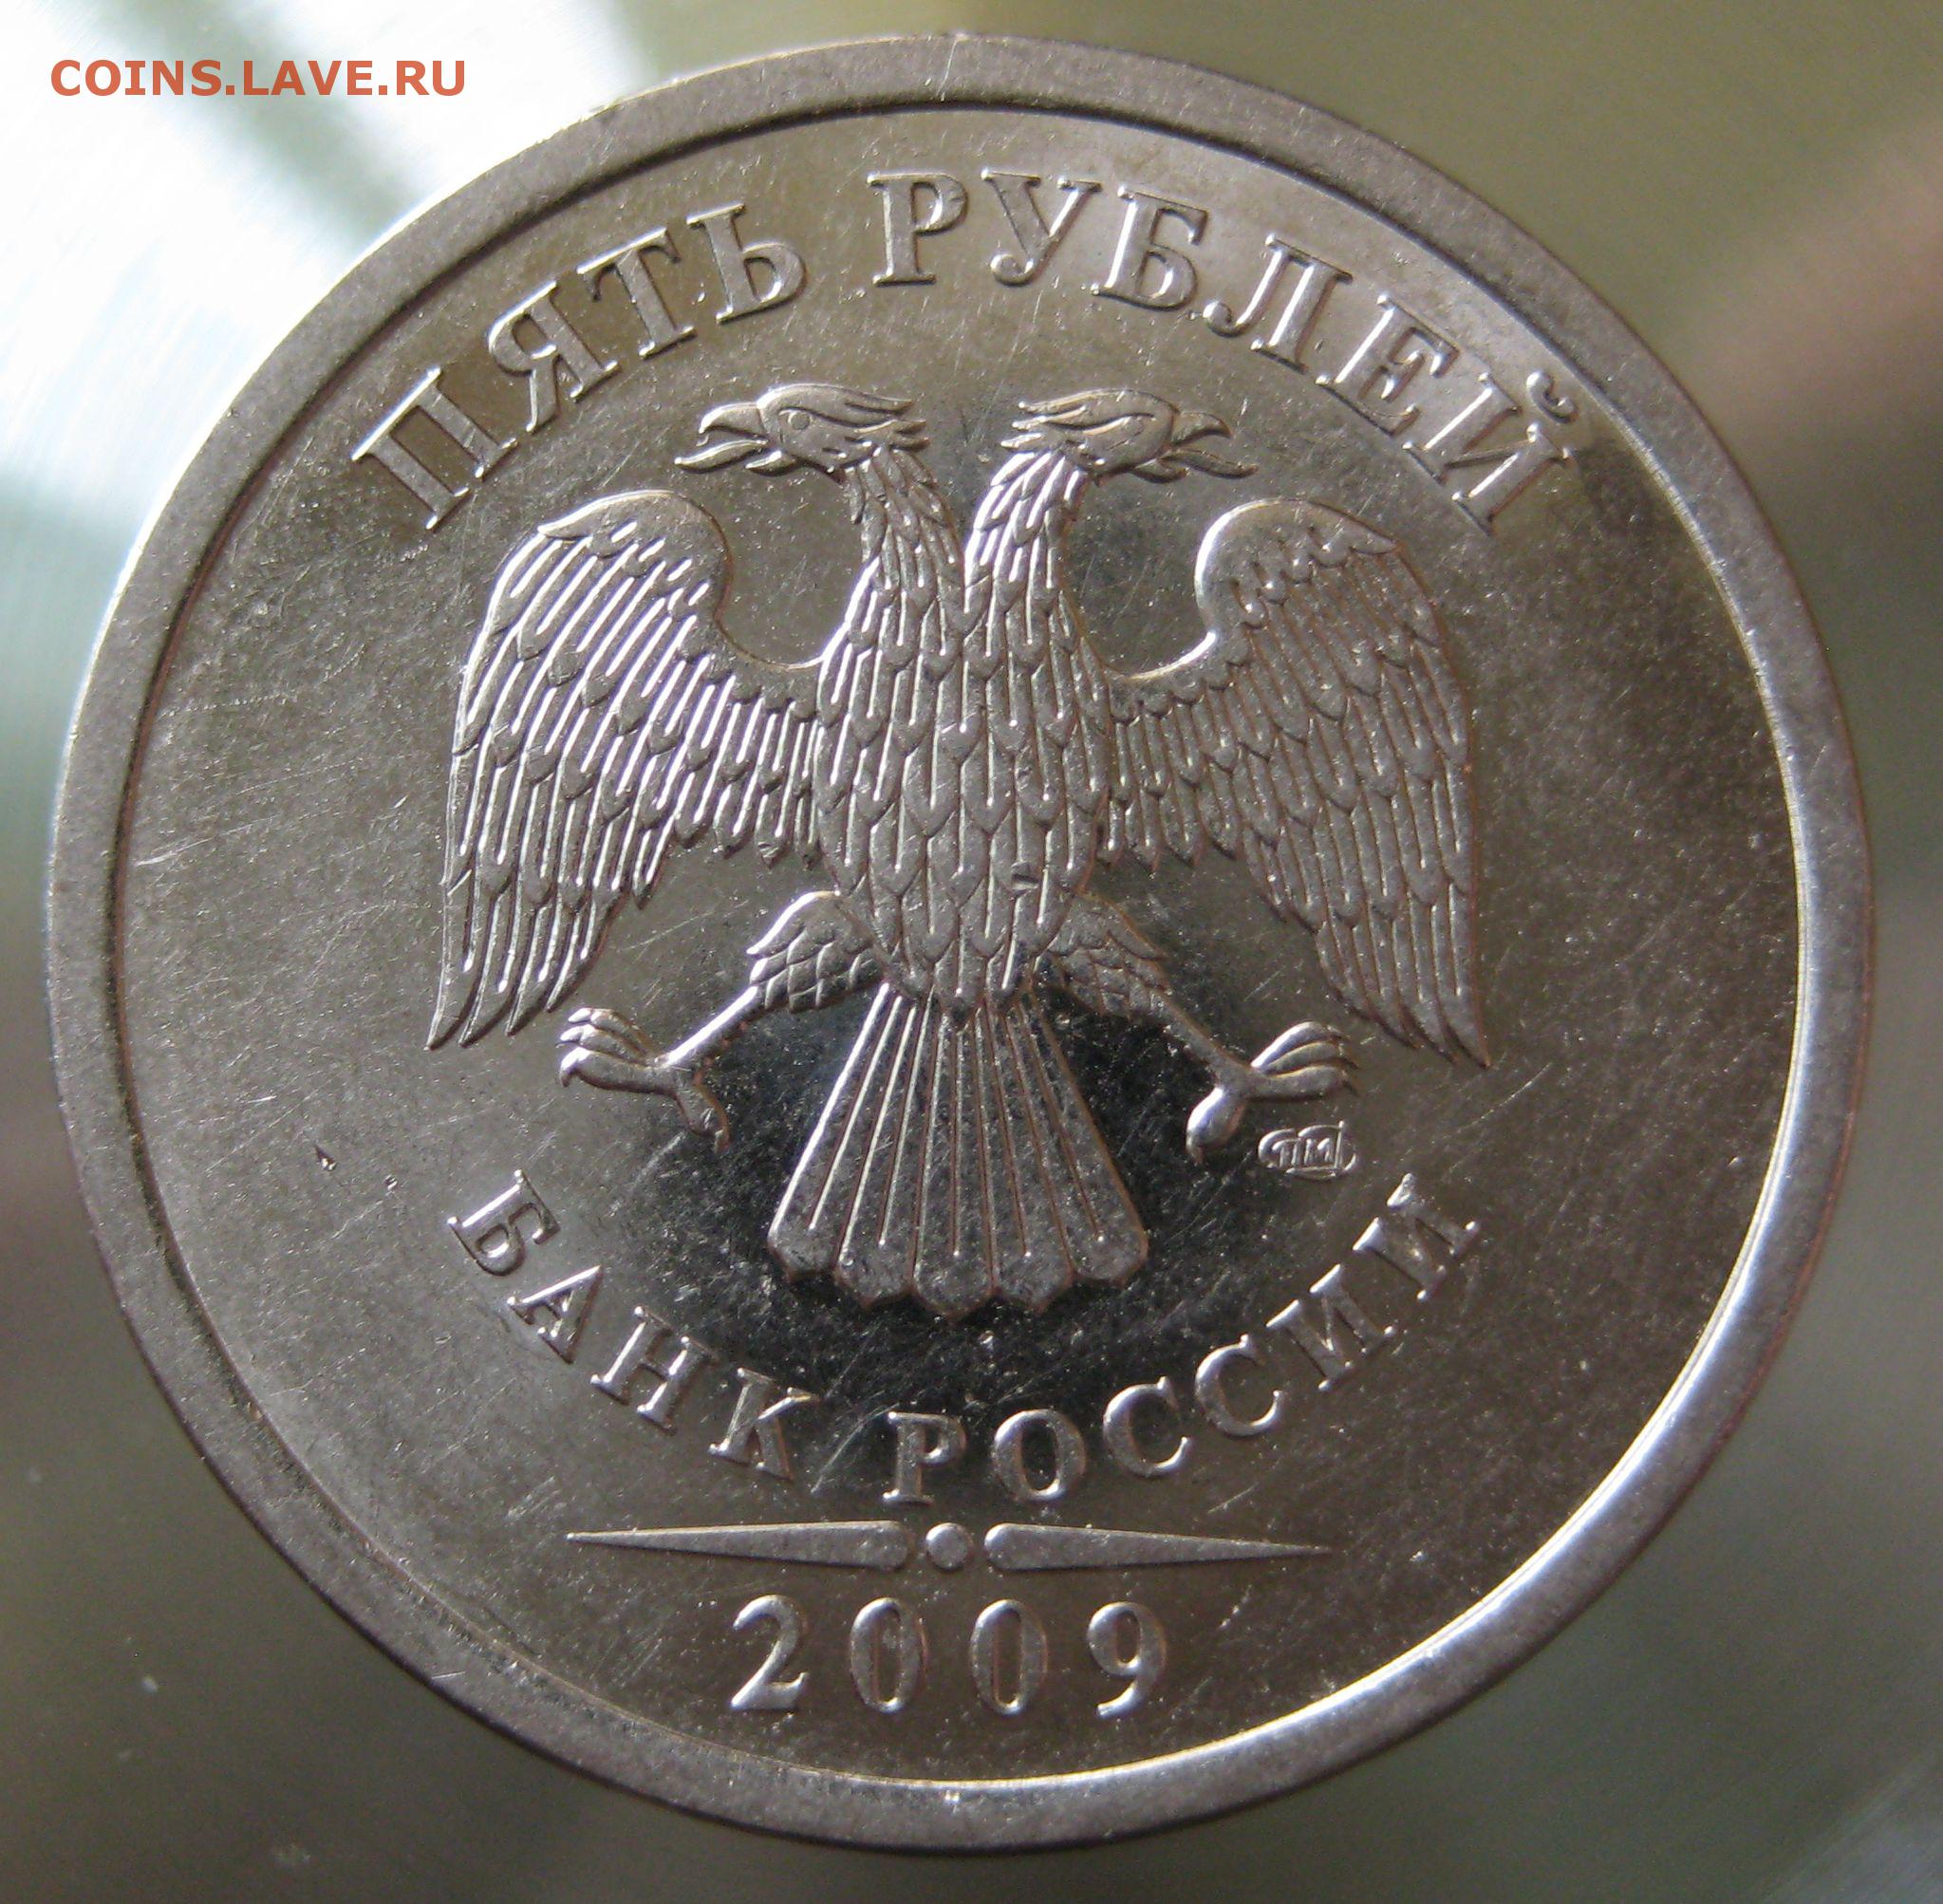 5 рублей немагнитная. 5 Рублей 2009 СПМД. 5 Рублей 2009 СПМД немагнитная. 5 Рублей 2009 СПМД магнитная штемпель г. 5 Рублей штемпель г 2009.